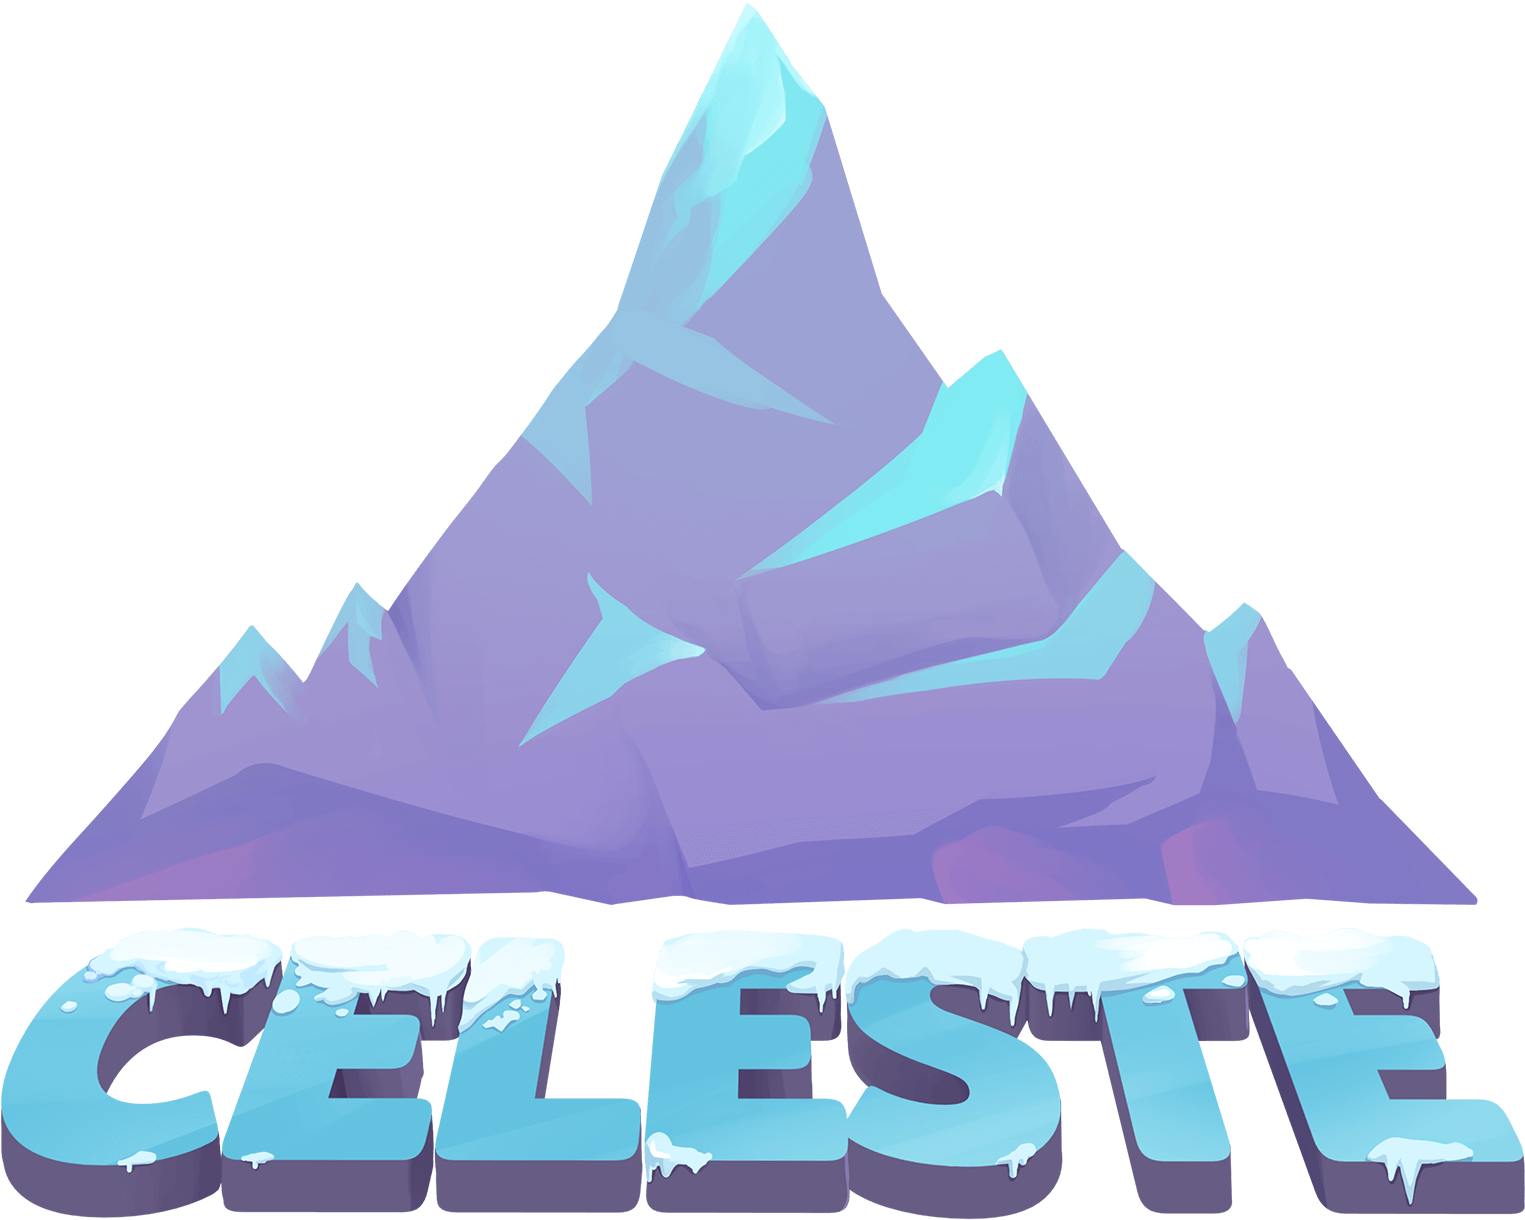 Celeste Game Logo PNG Photos